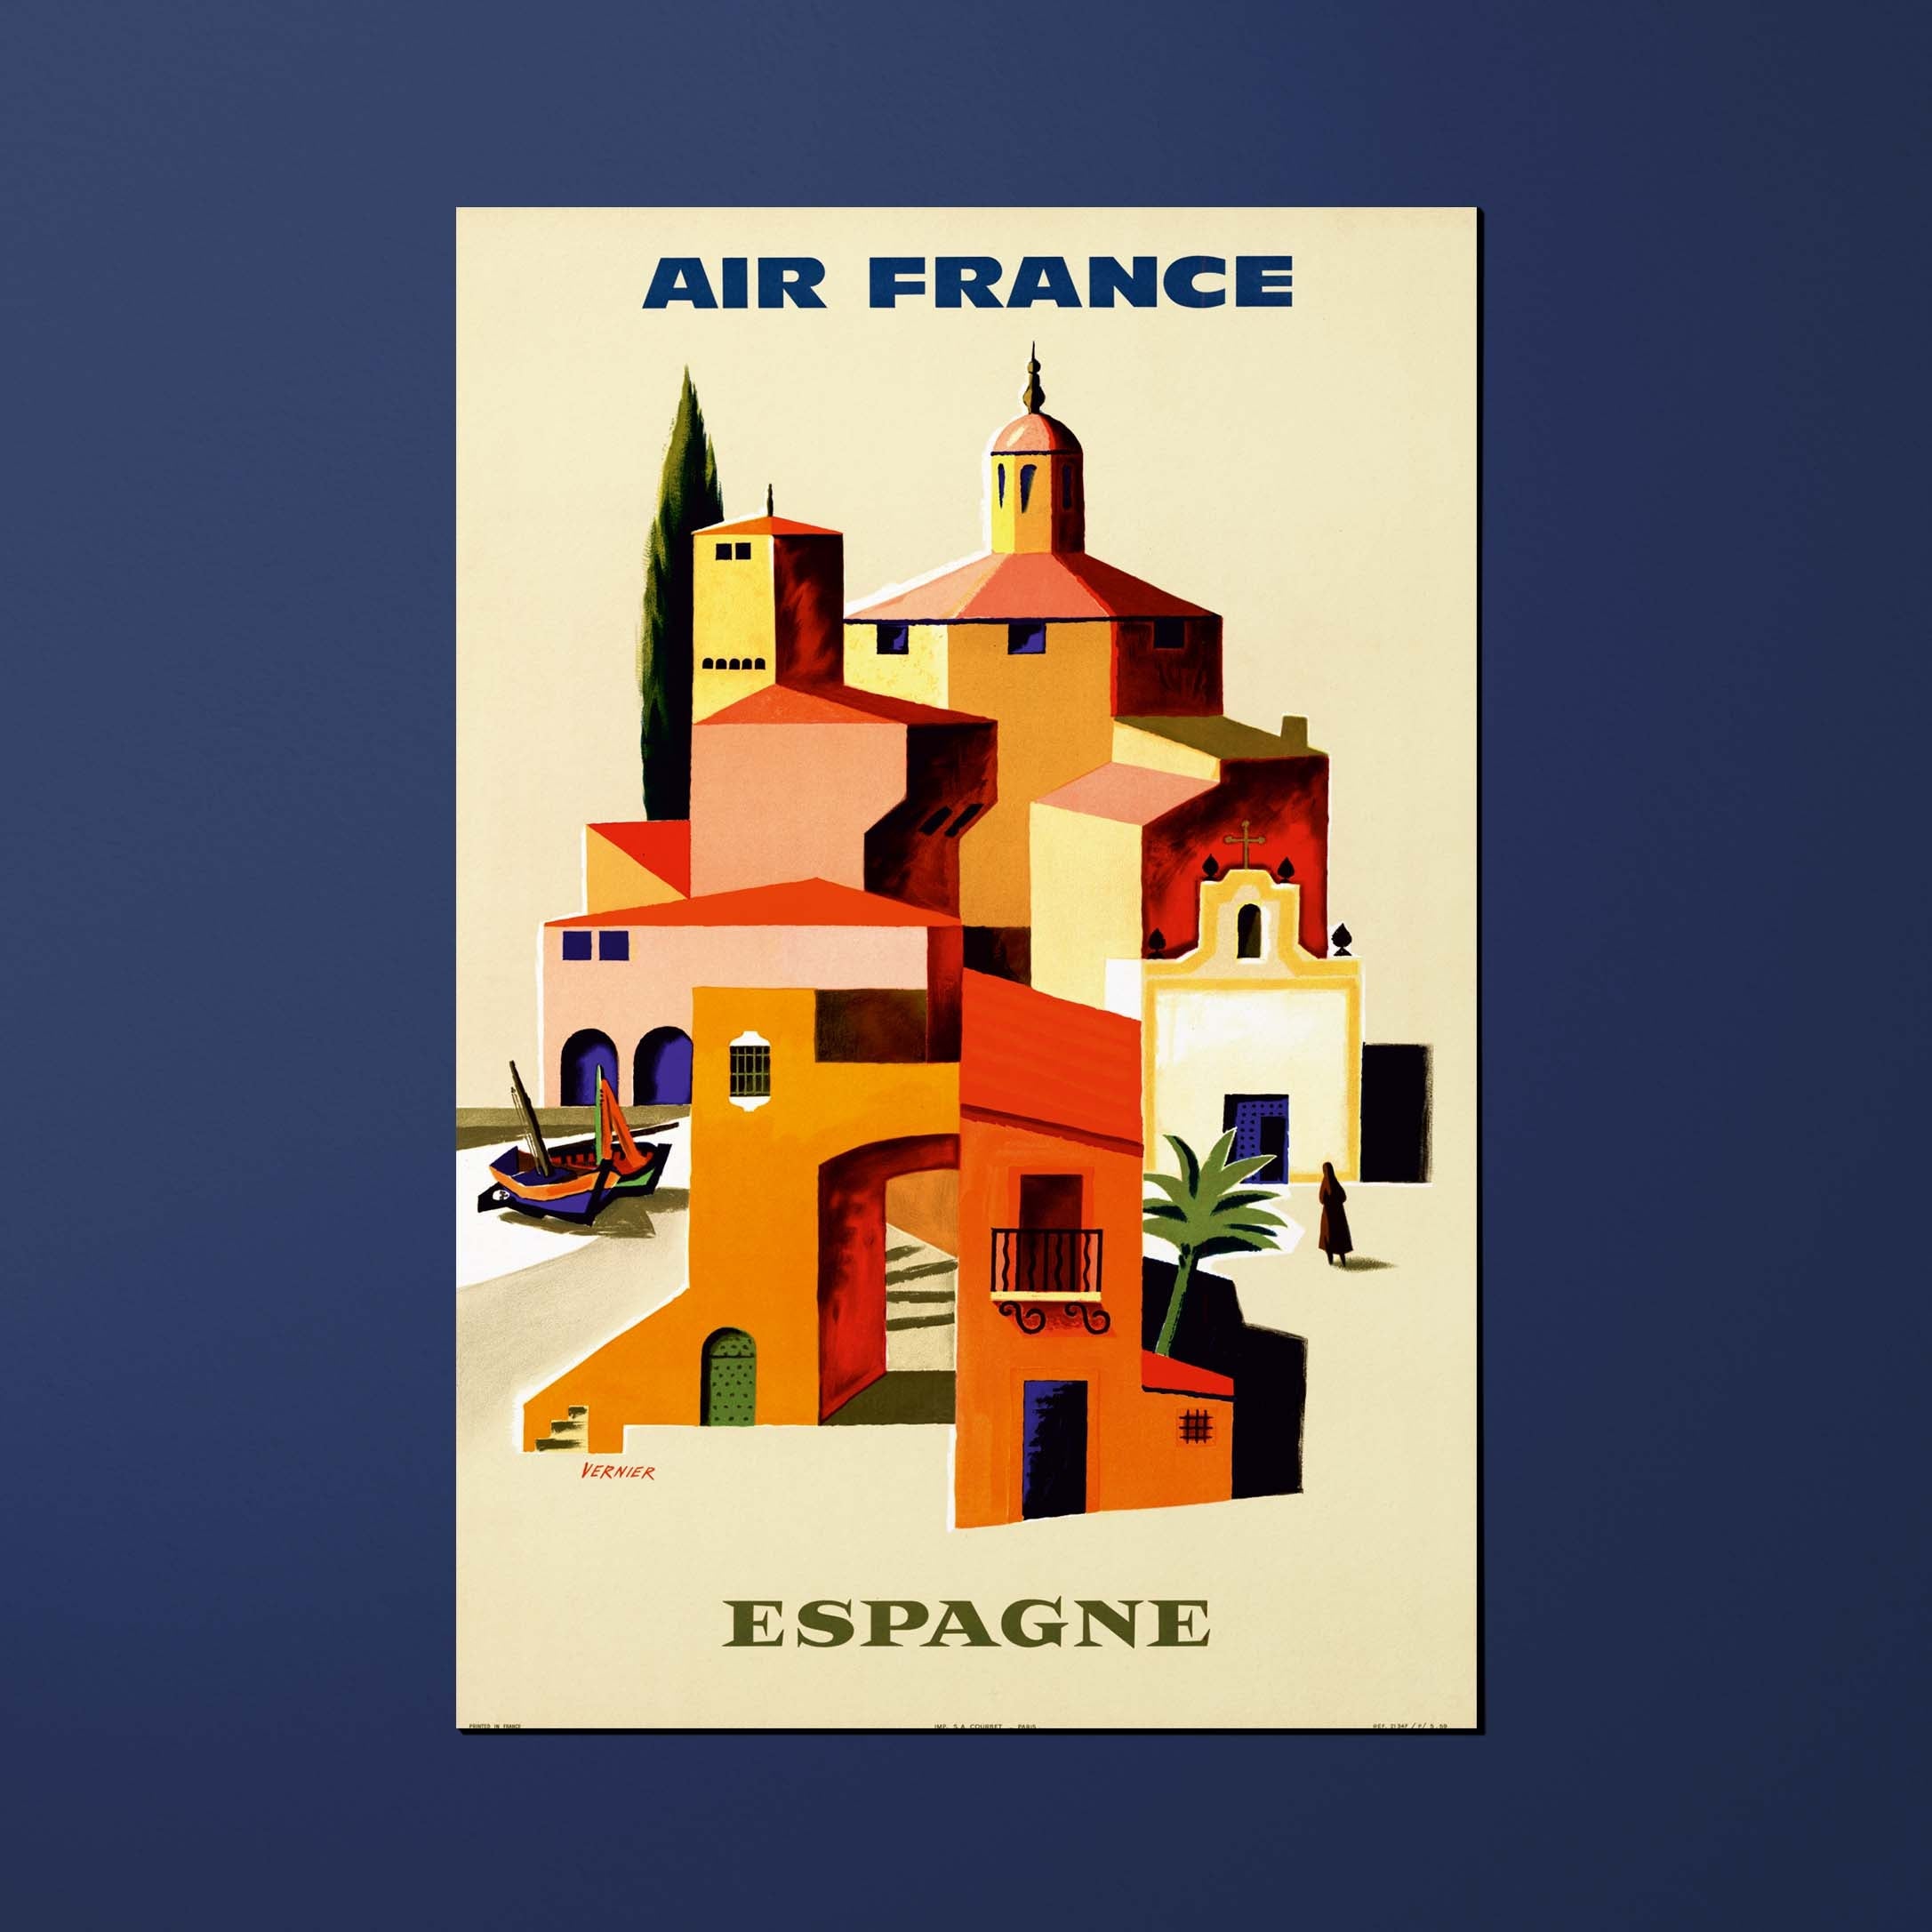 Carte postale Air France Legend Espagne, péninsule ibérique